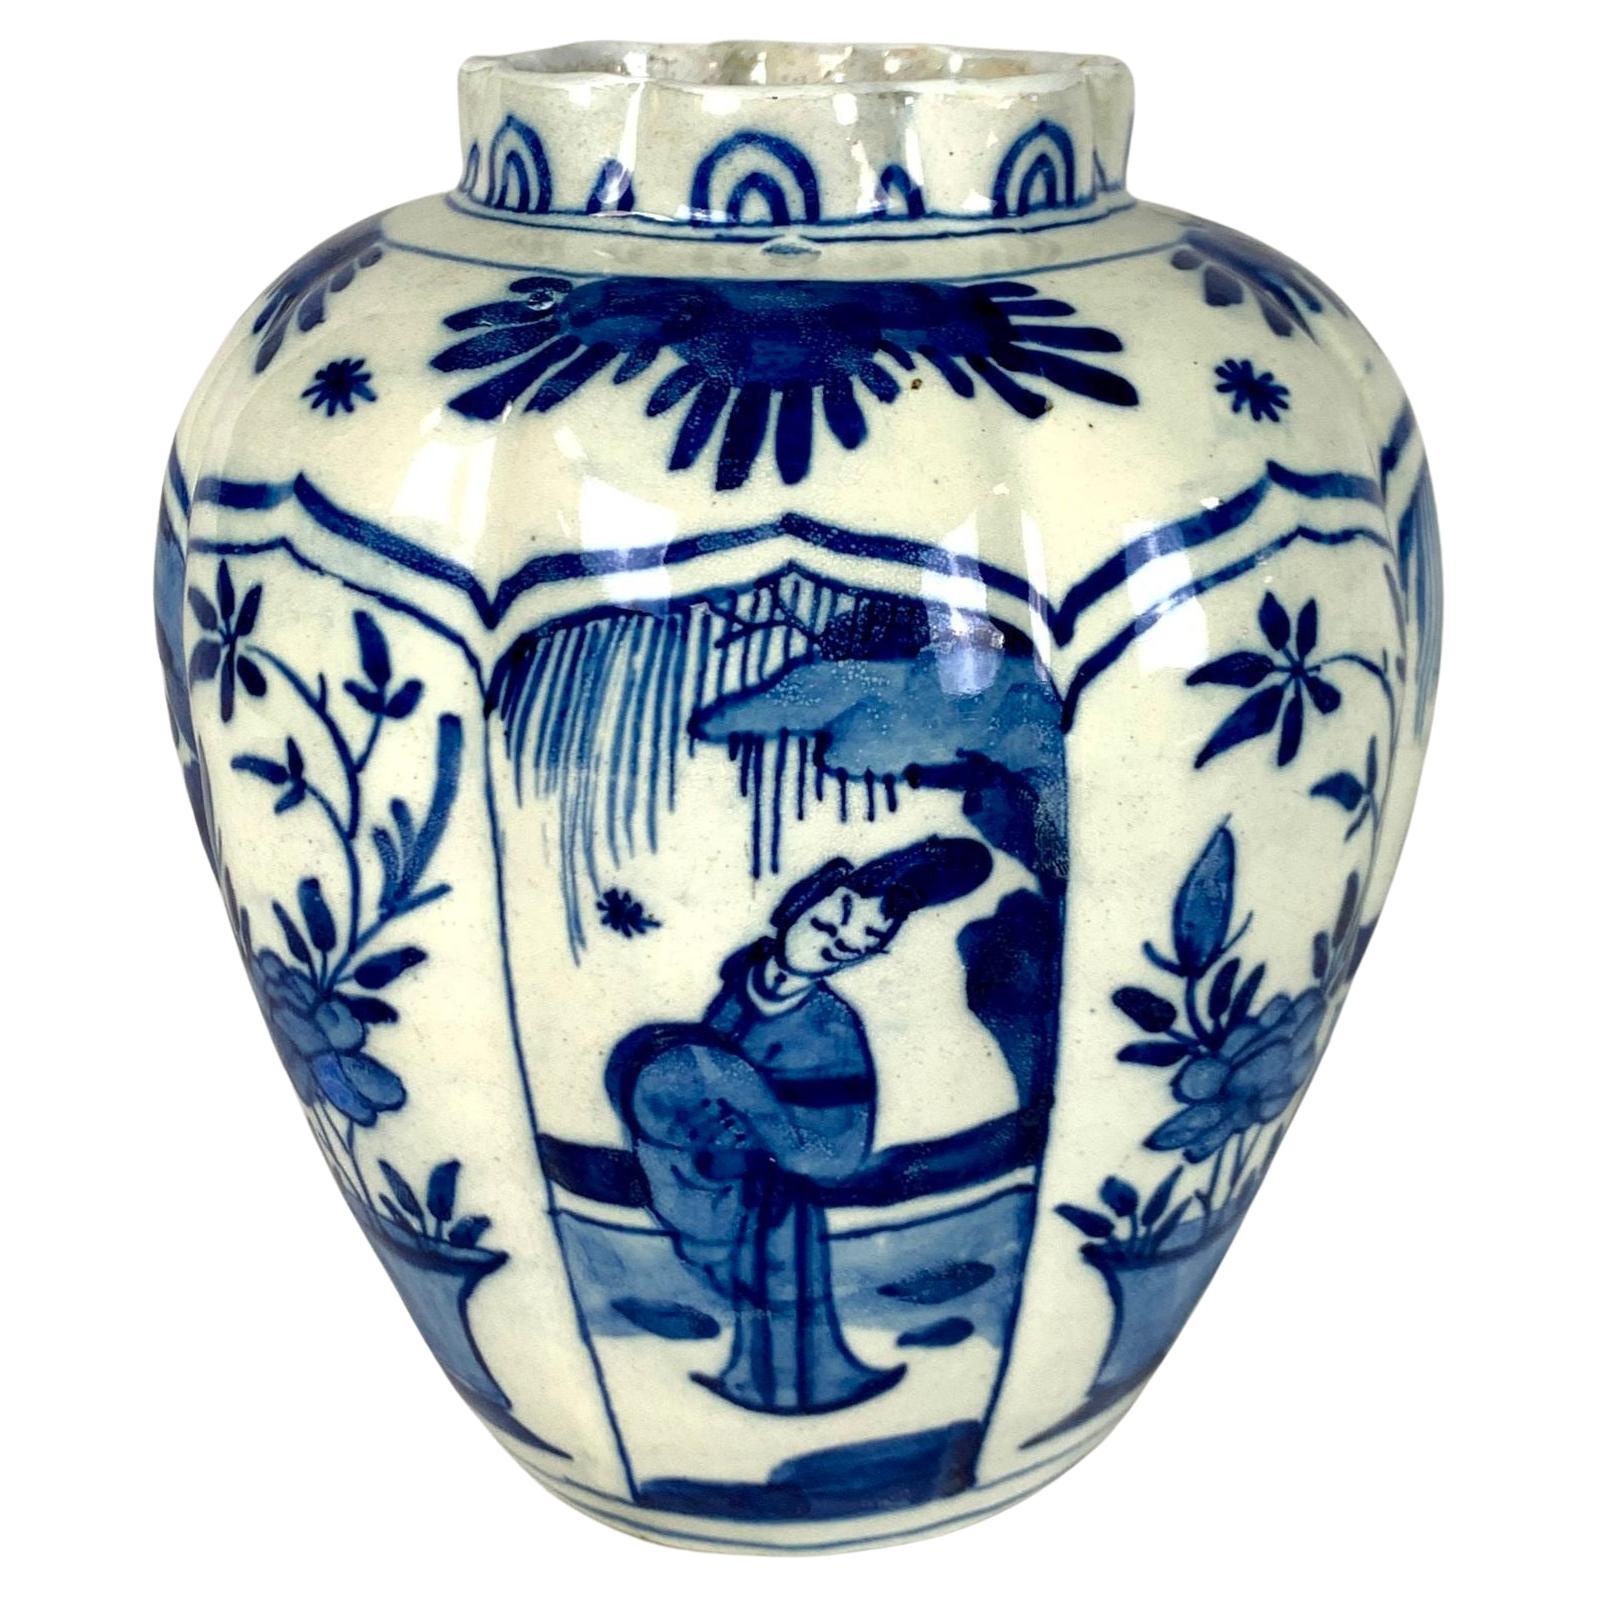 Pot de Delft bleu et blanc fabriqué aux Pays-Bas vers 1800